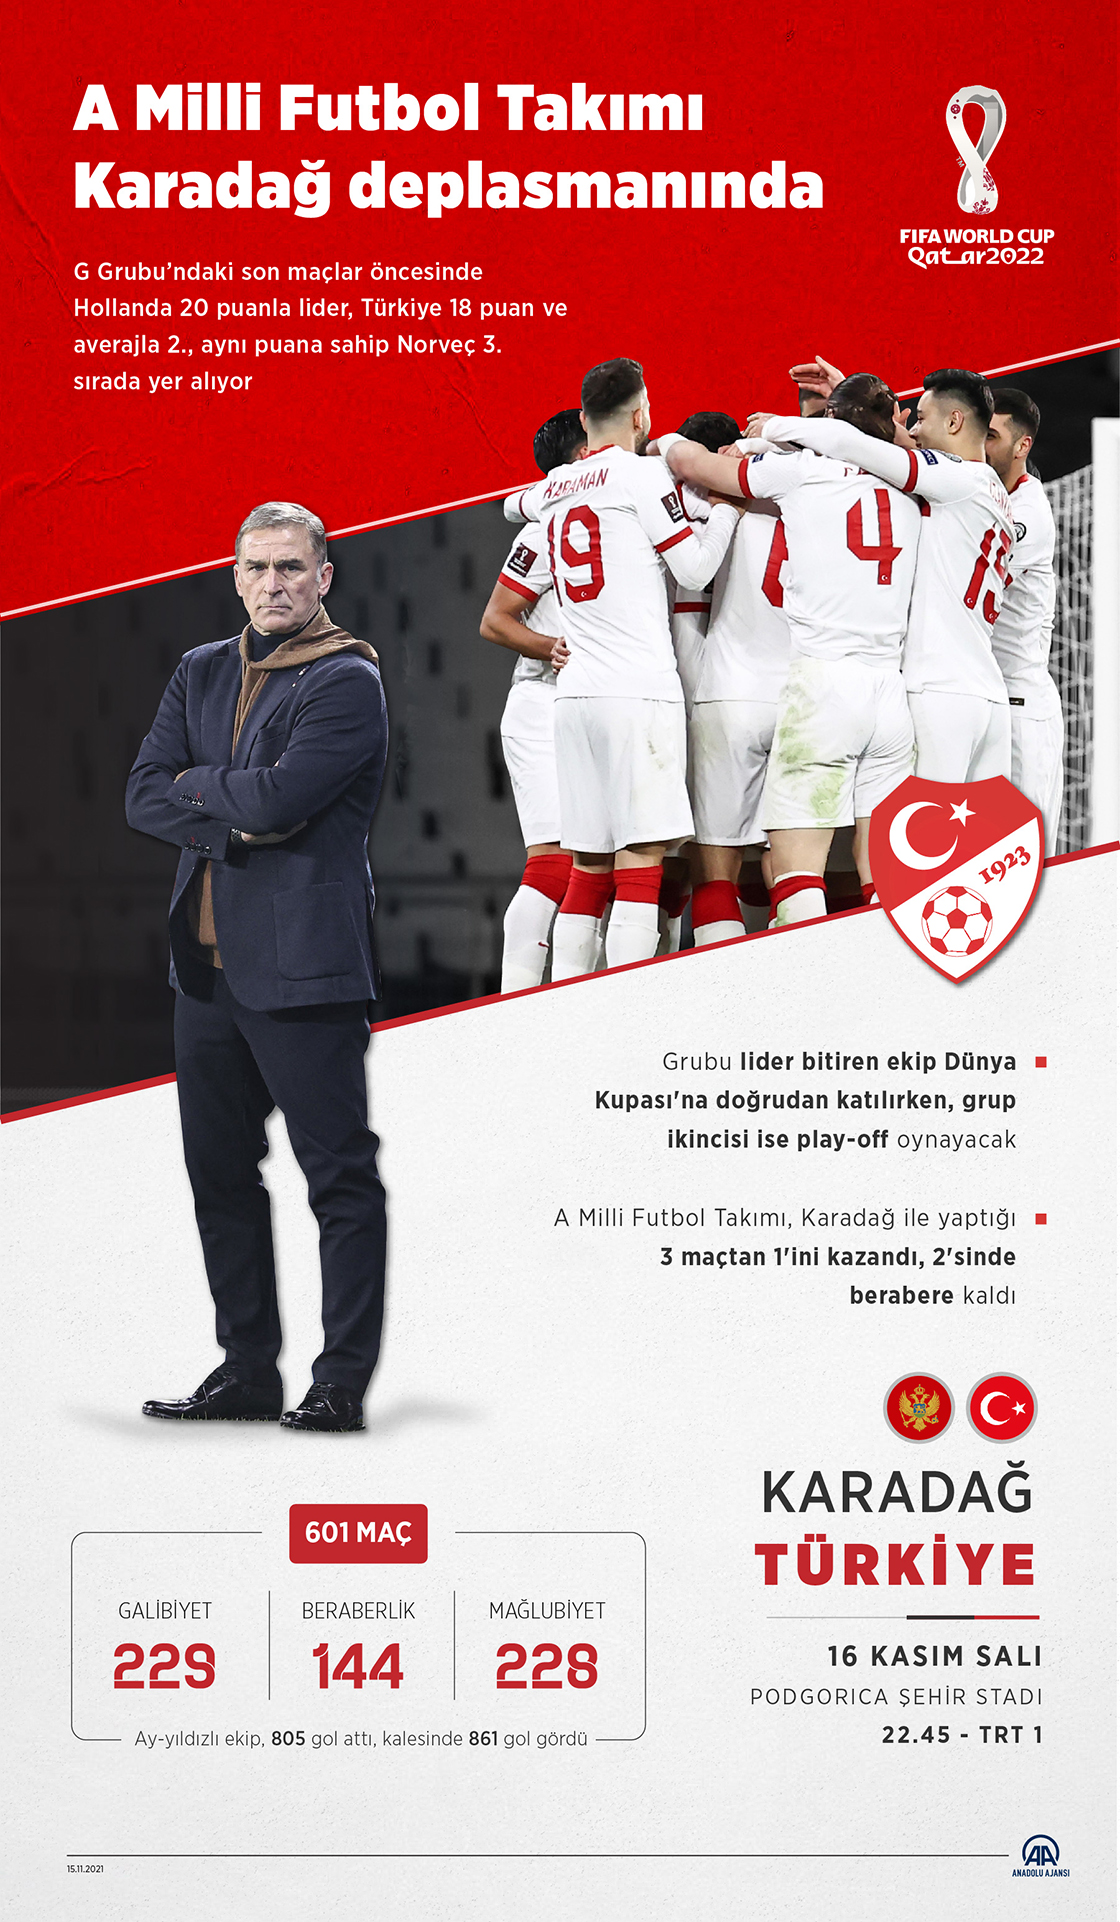 A Milli Futbol Takımı, Karadağ deplasmanında